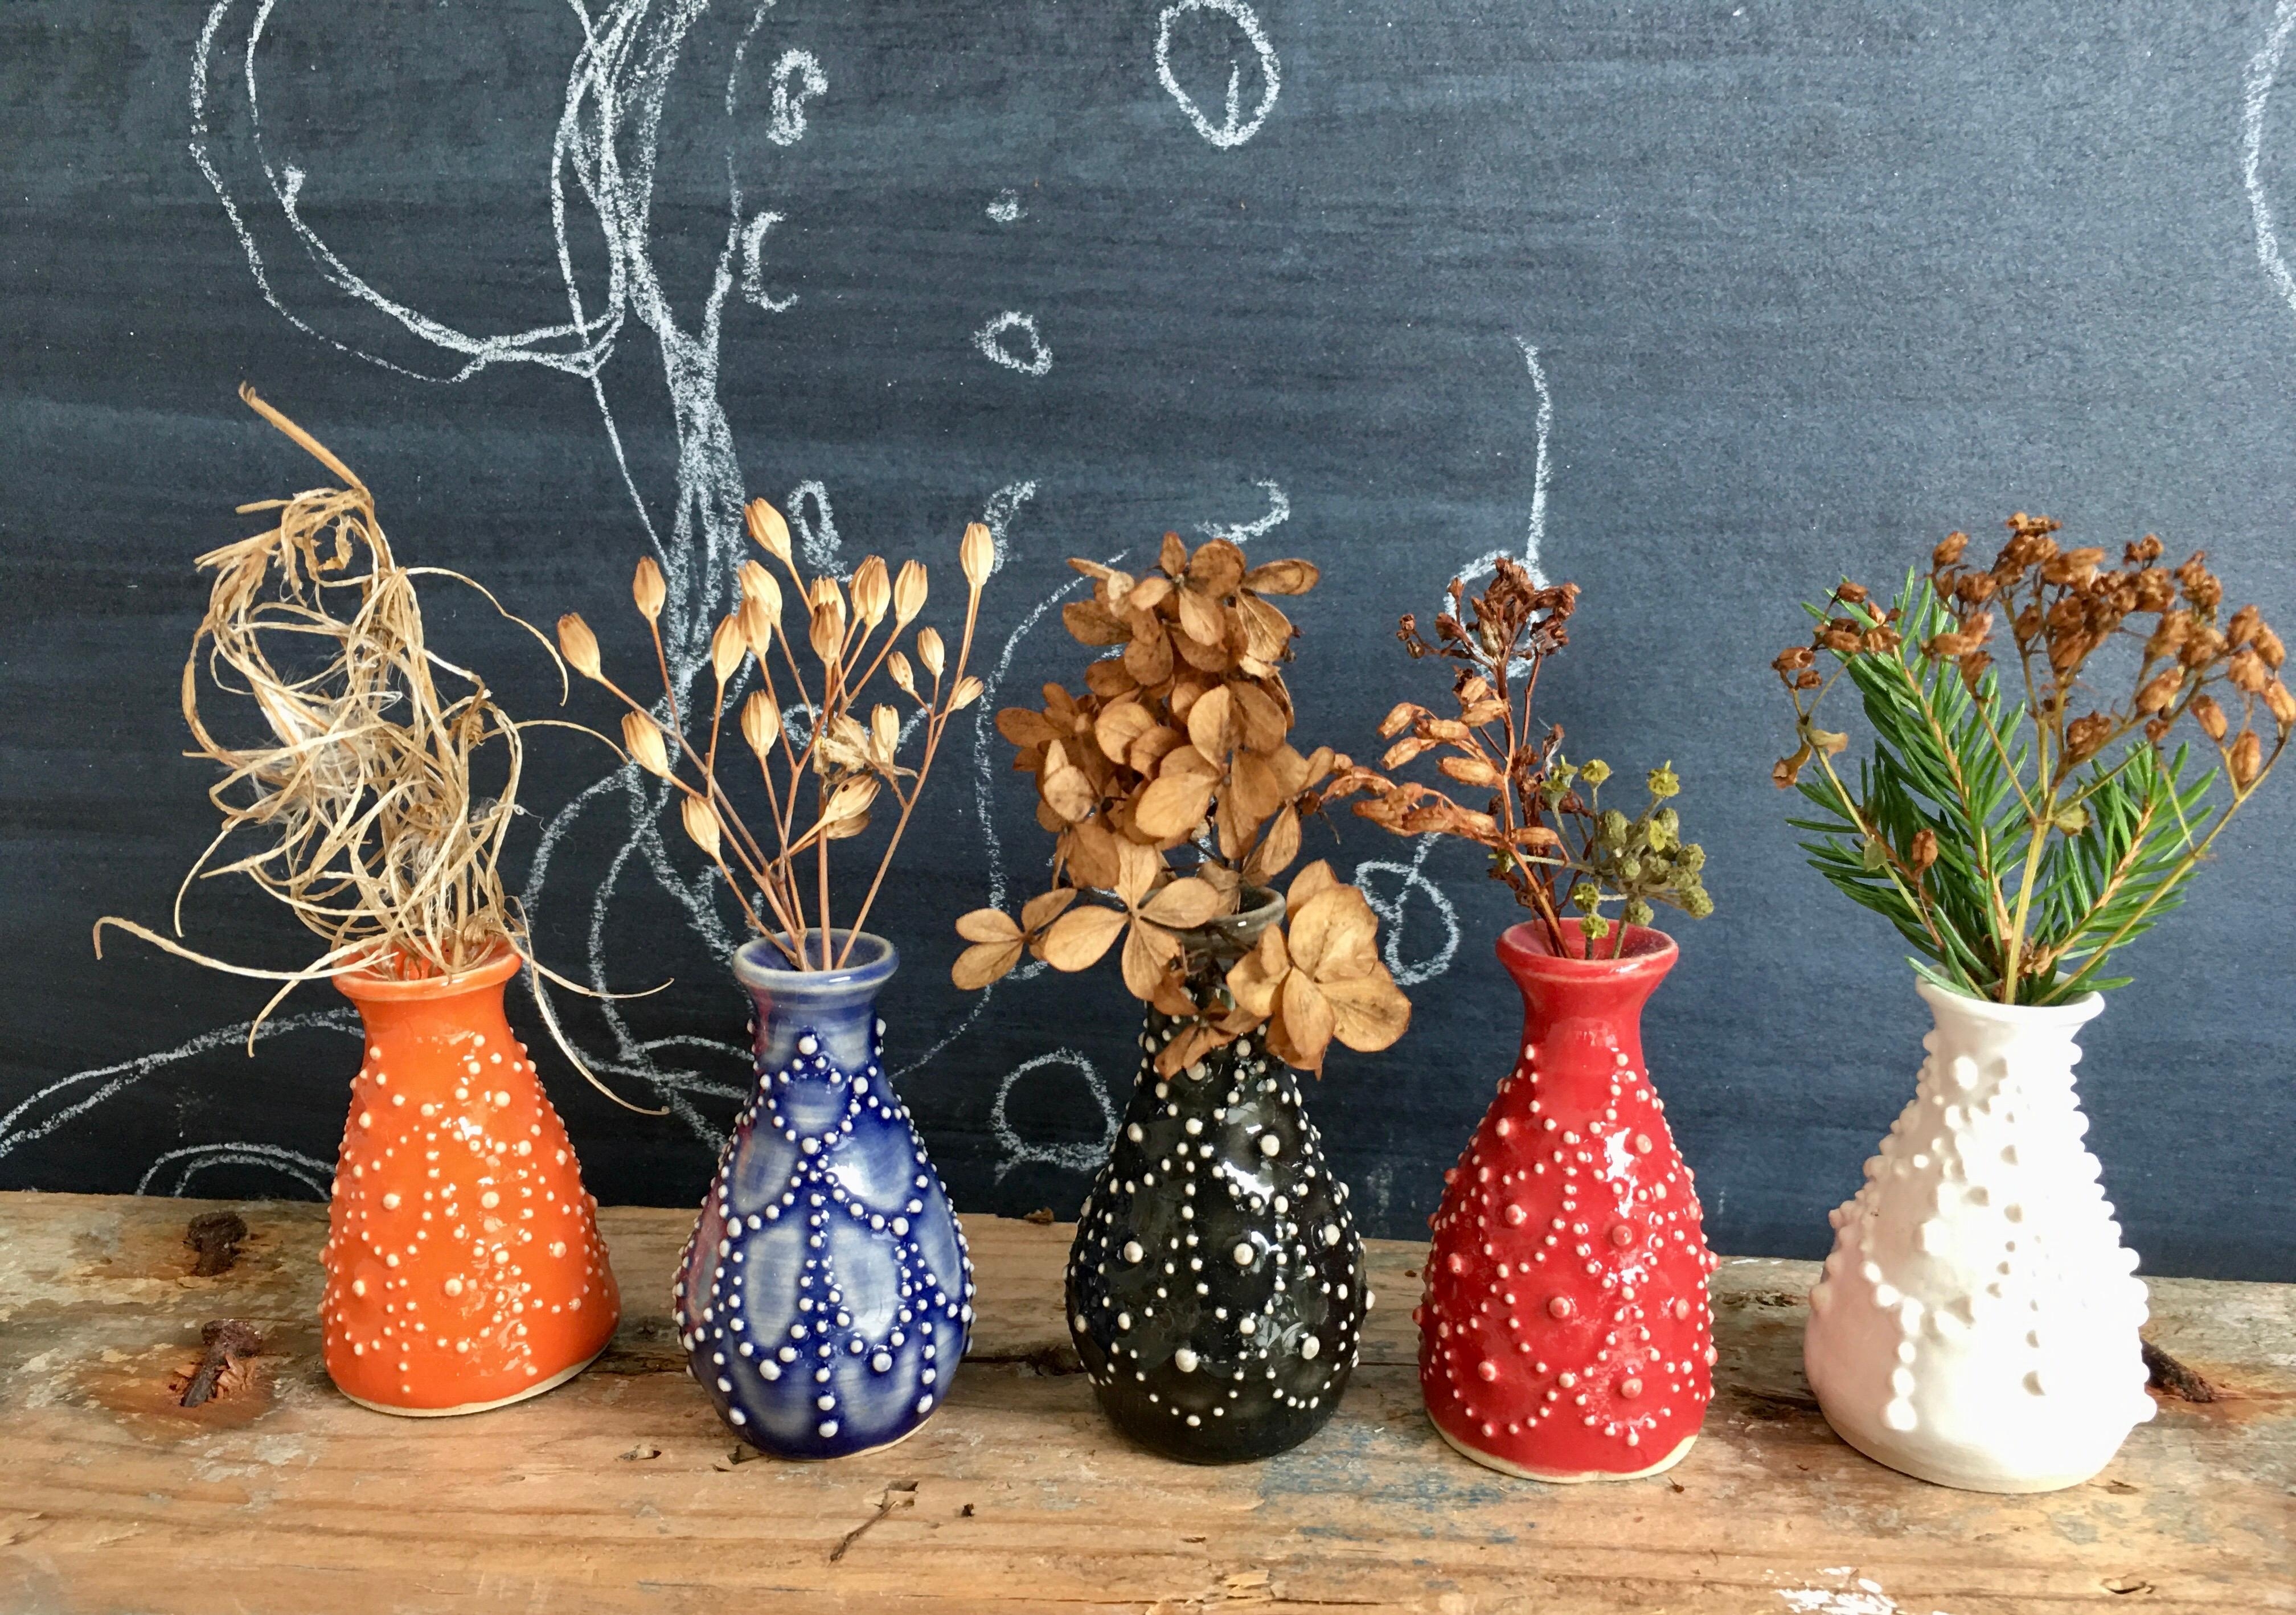 Der Herbst ist bunt bei mir, auch wenn die Vasen nur 4 cm hoch sind ! #trockenblumen #minivasen #sliptrail #keramik